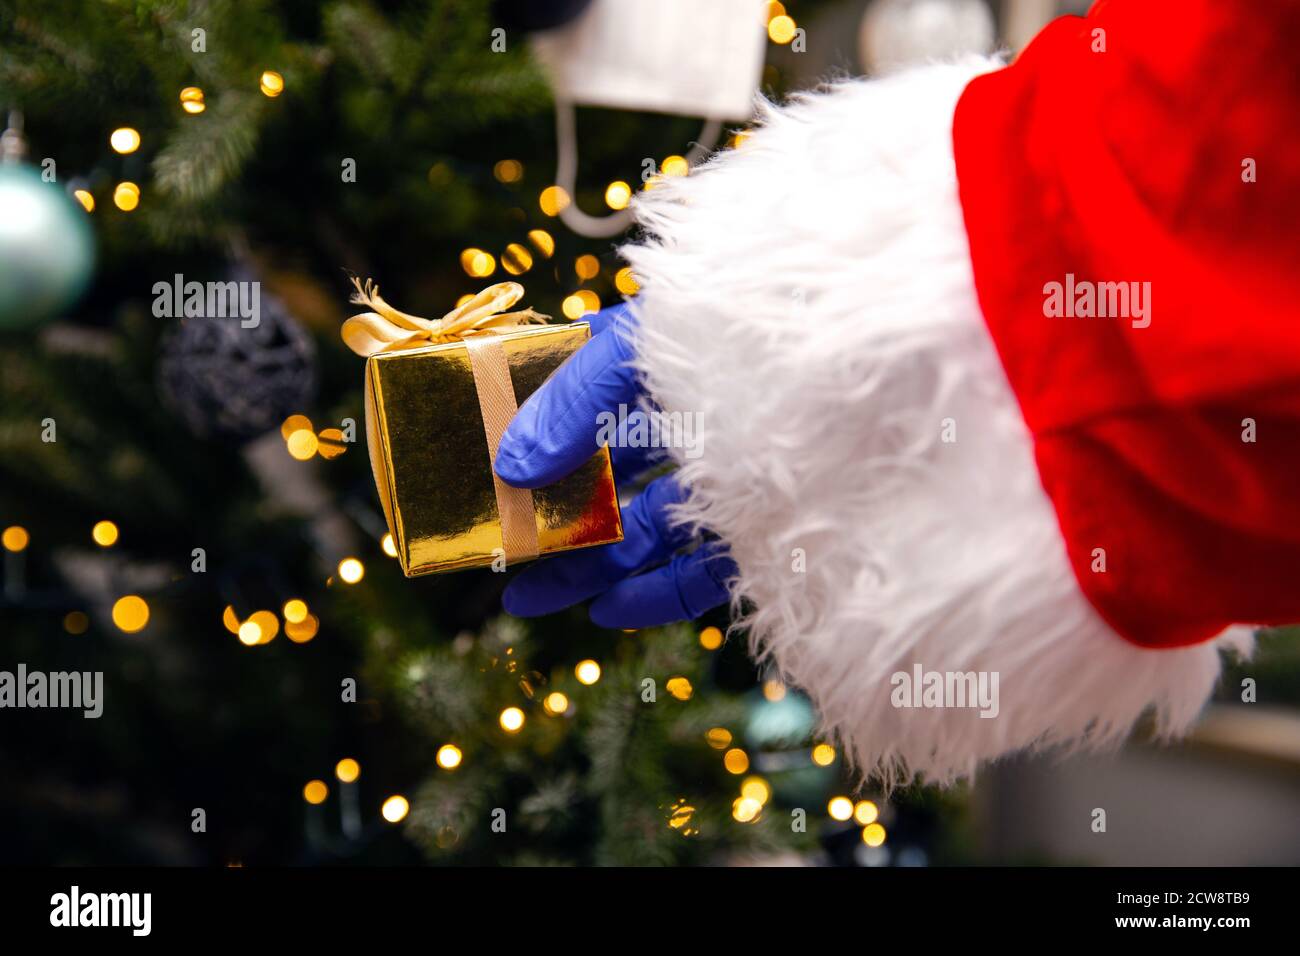 Weihnachtsmann mit Handschuhen und Gesichtsmaske für Coronavirus am Weihnachtsbaum, mit goldenem Geschenk, Covid-19 und Weihnachts-Sicherheitskonzept Stockfoto